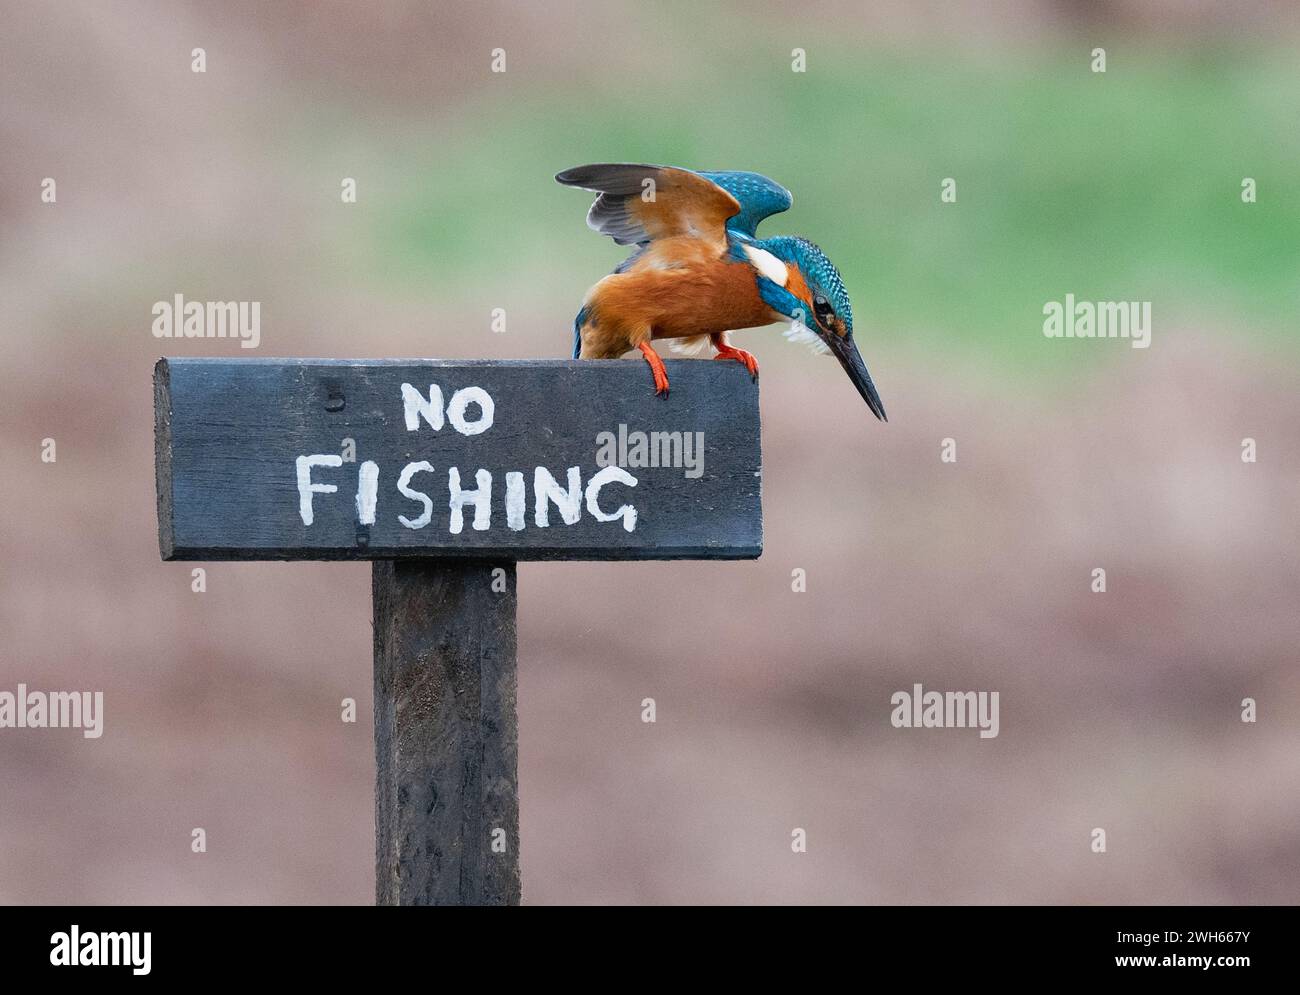 Bereit zum Fischen von einer Angelpiste SCHOTTLAND URKOMISCHE BILDER zeigen einen tapferen eisvogel, der auf einem Schild mit einem Fisch in Schottland sitzt Stockfoto